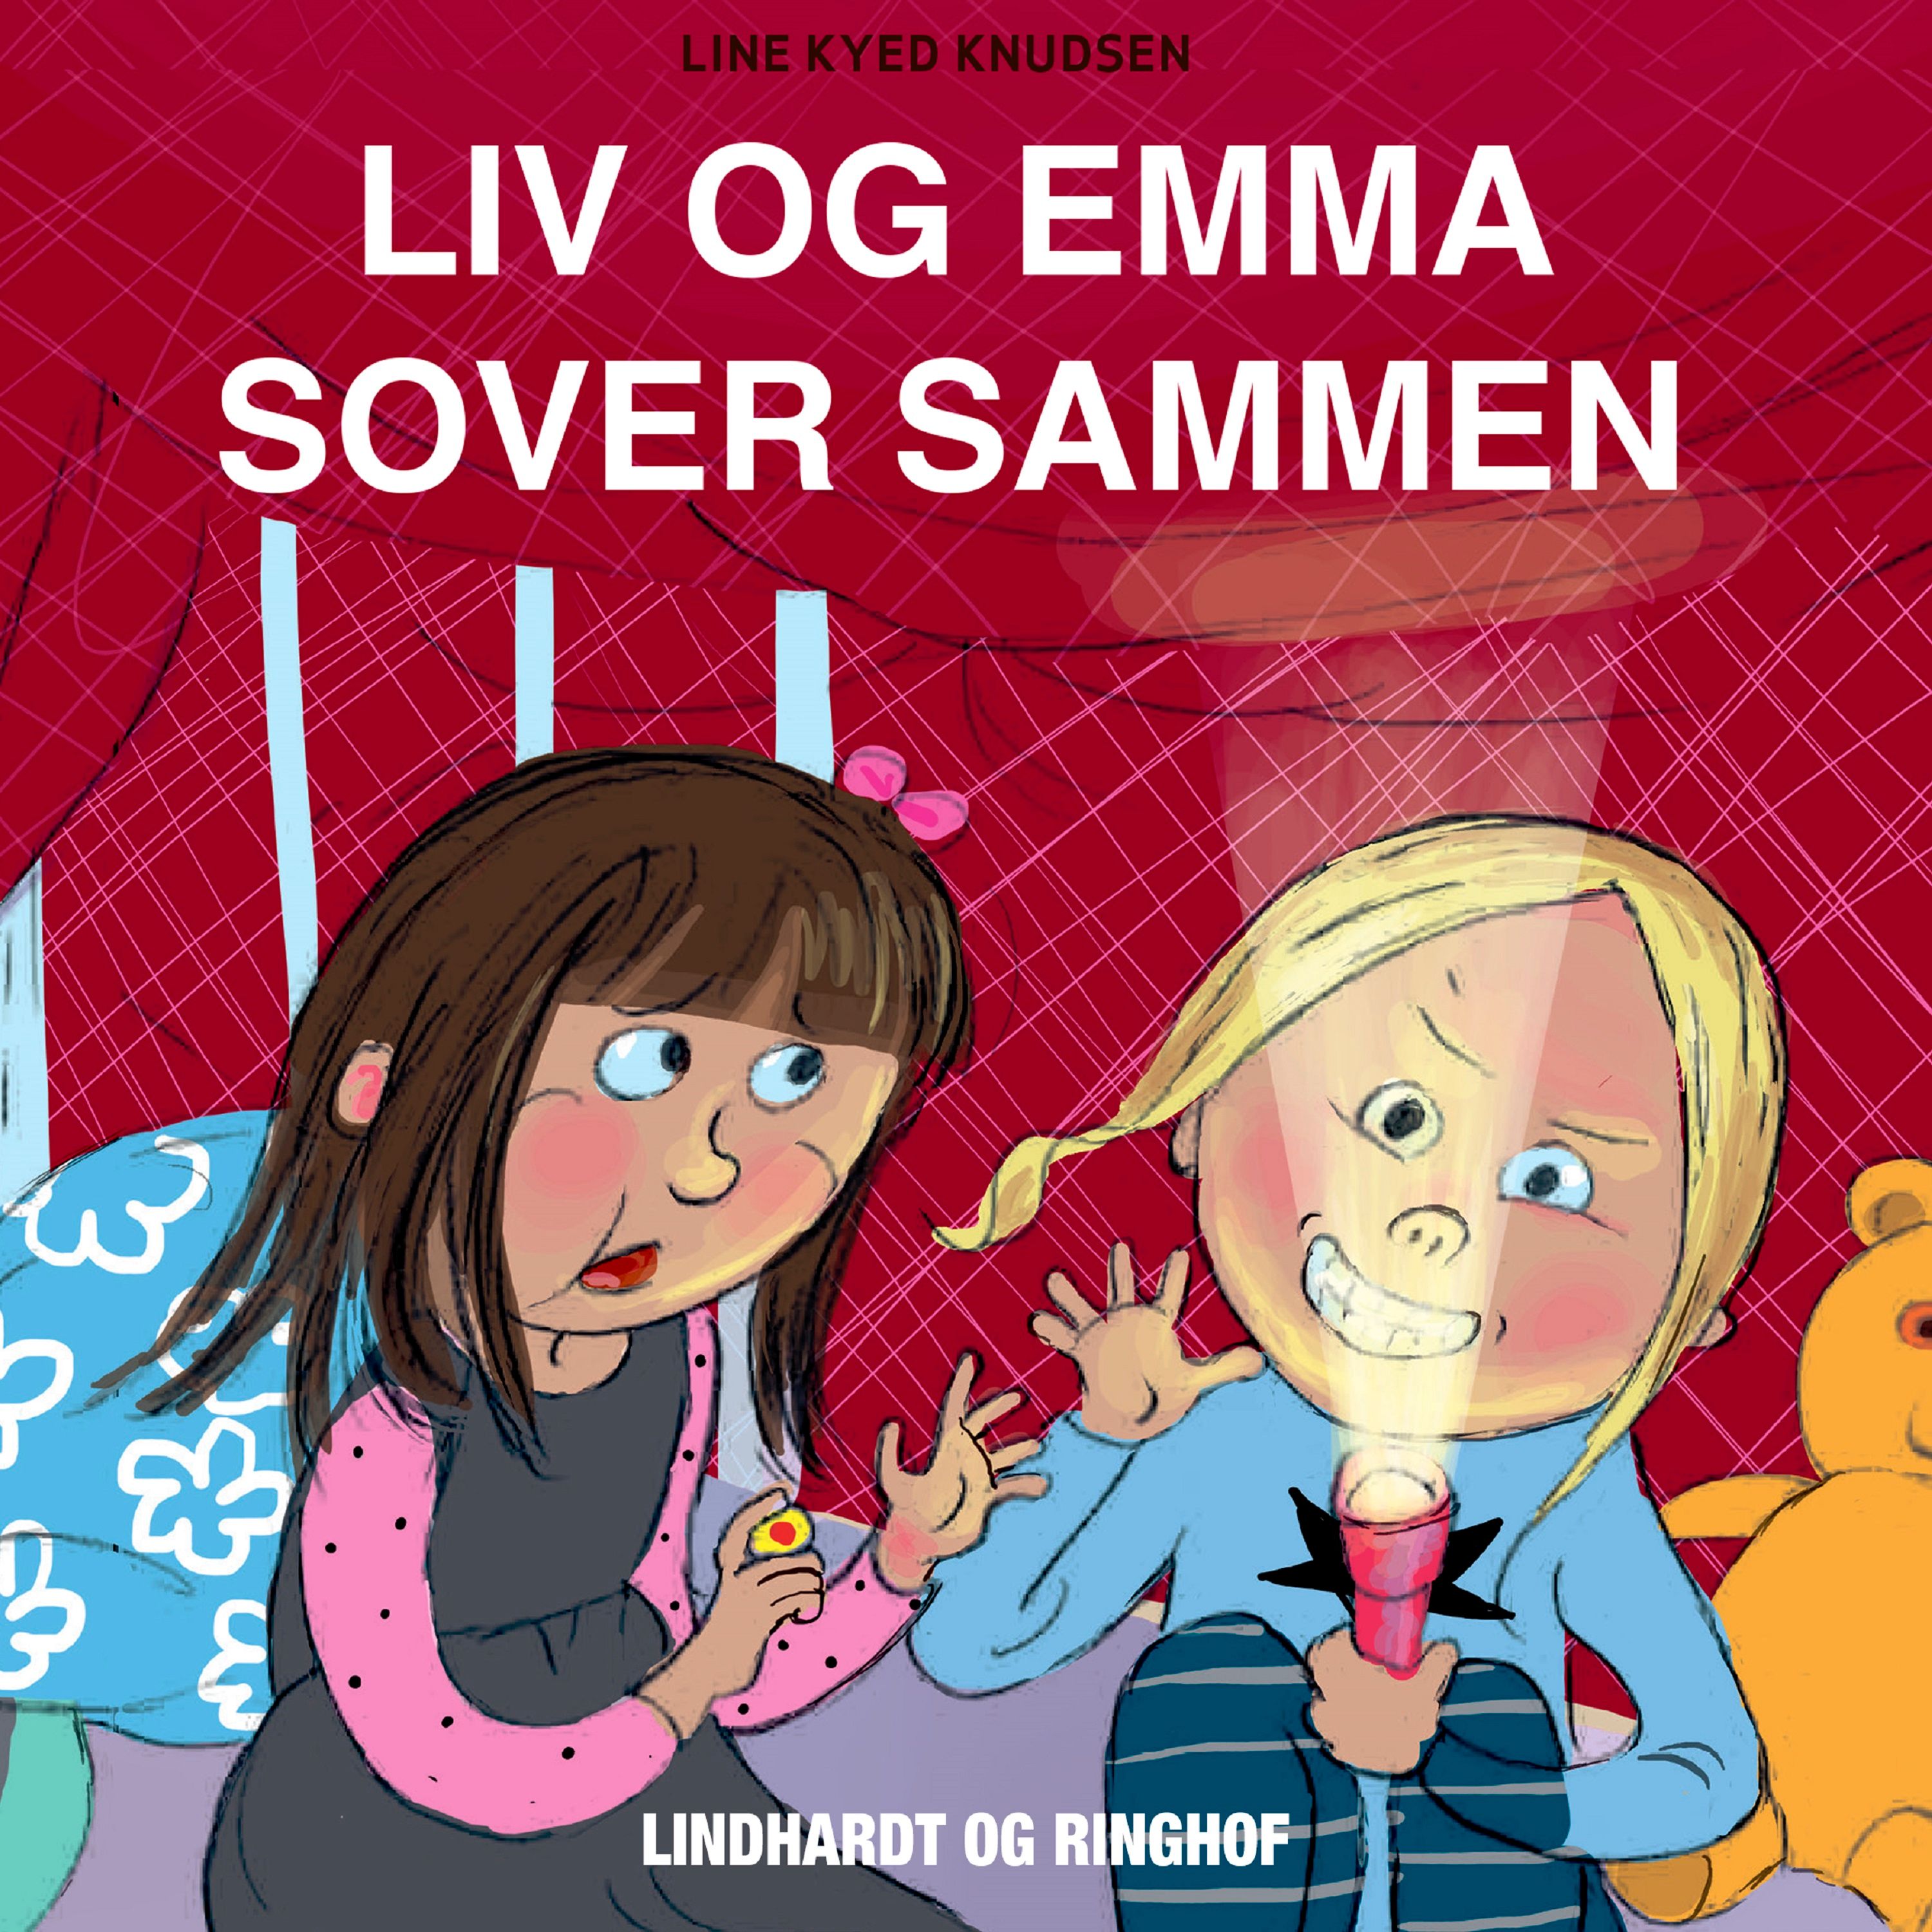 Liv og Emma sover sammen, audiobook by Line Kyed Knudsen